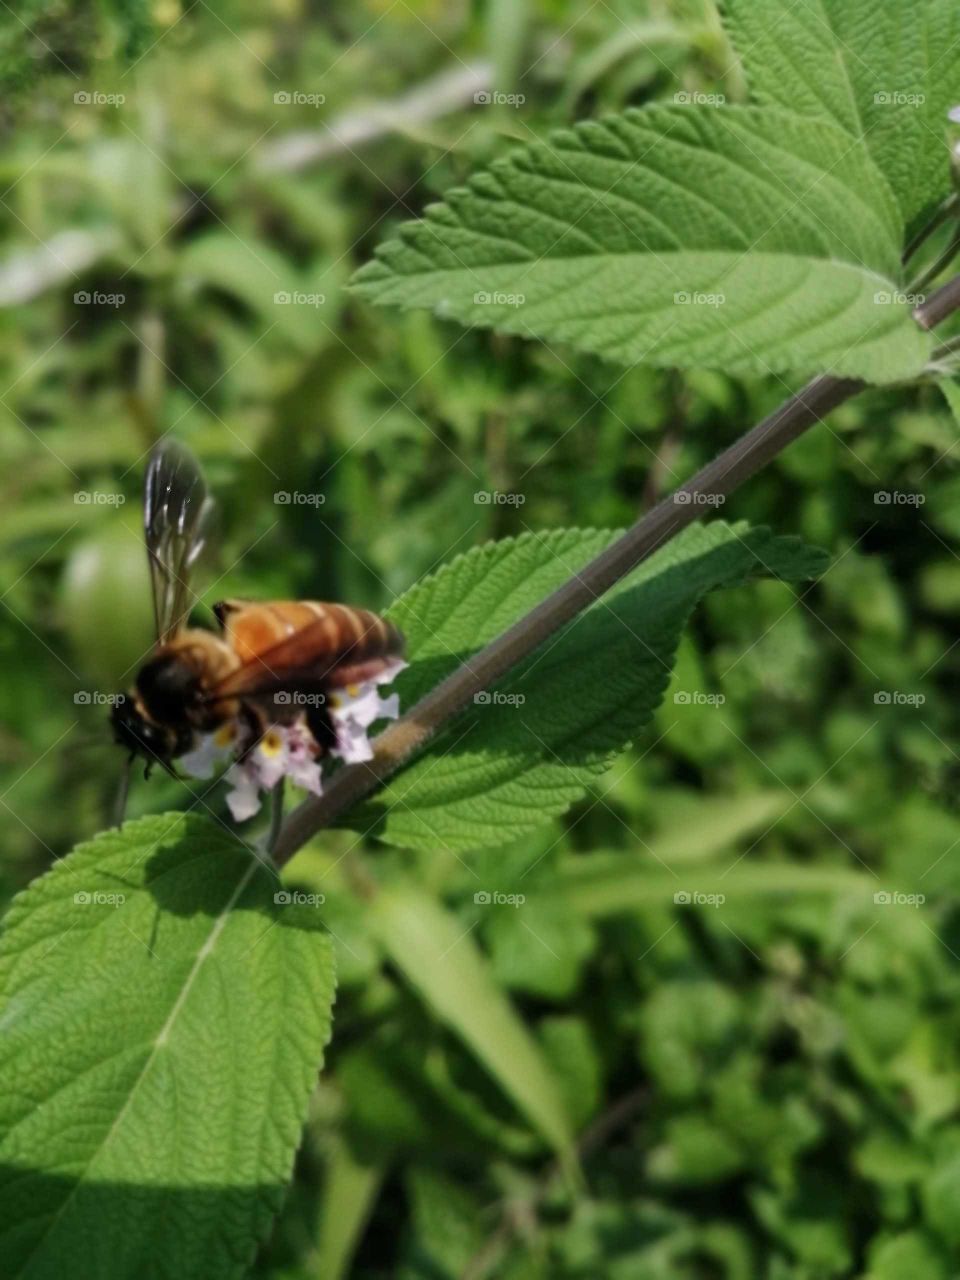 A little Honey Bee